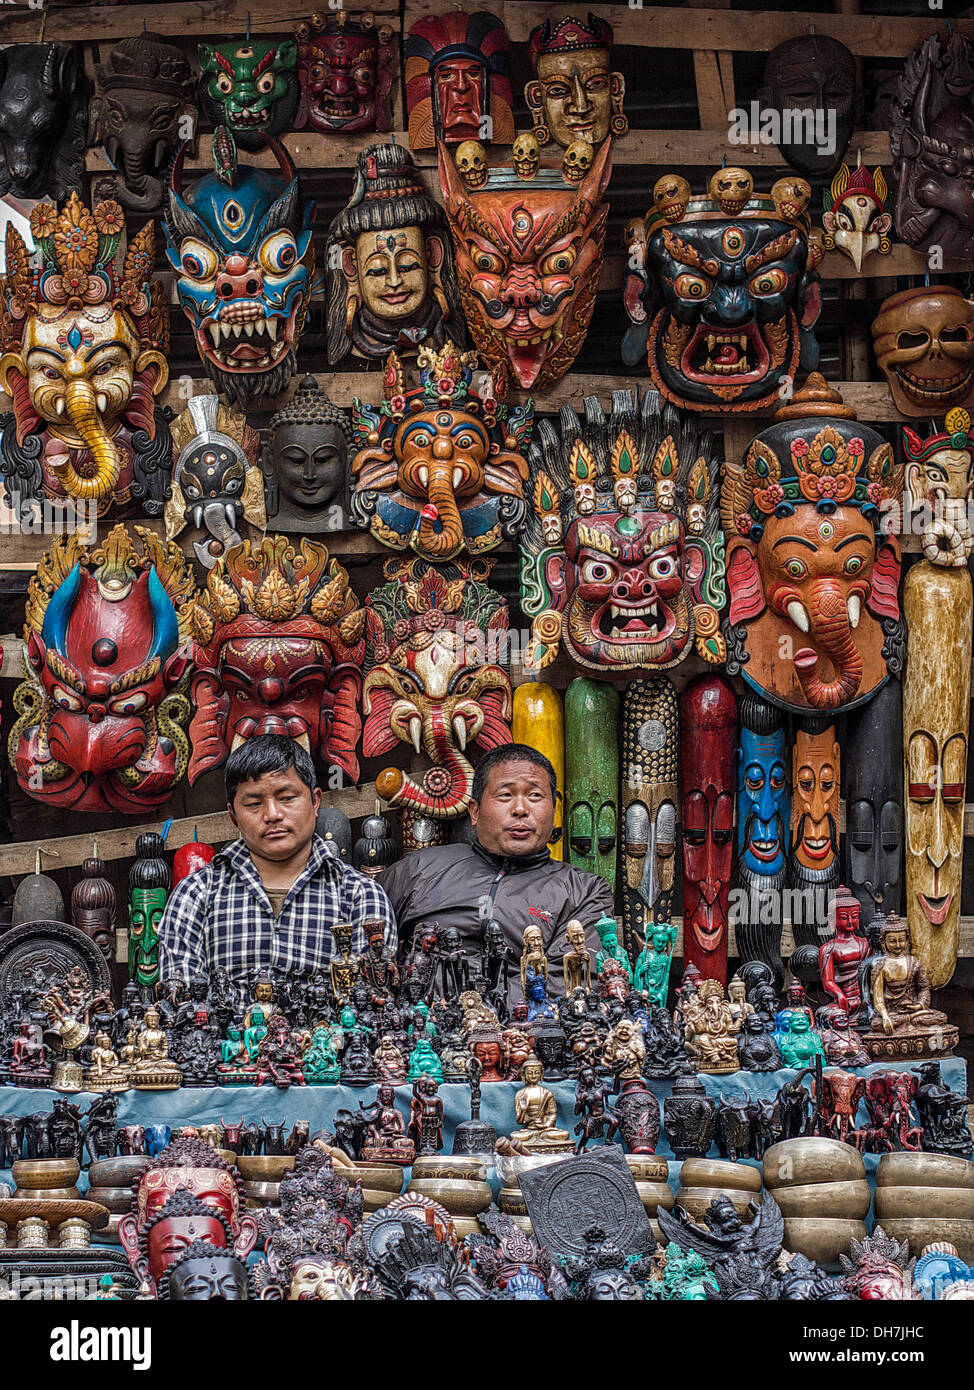 Ladenbesitzer sitzen am traditionellen nepalesischen Handwerk und Souvenir-Shop in Thamel Bezirk von Kathmandu, Nepal. Stockfoto